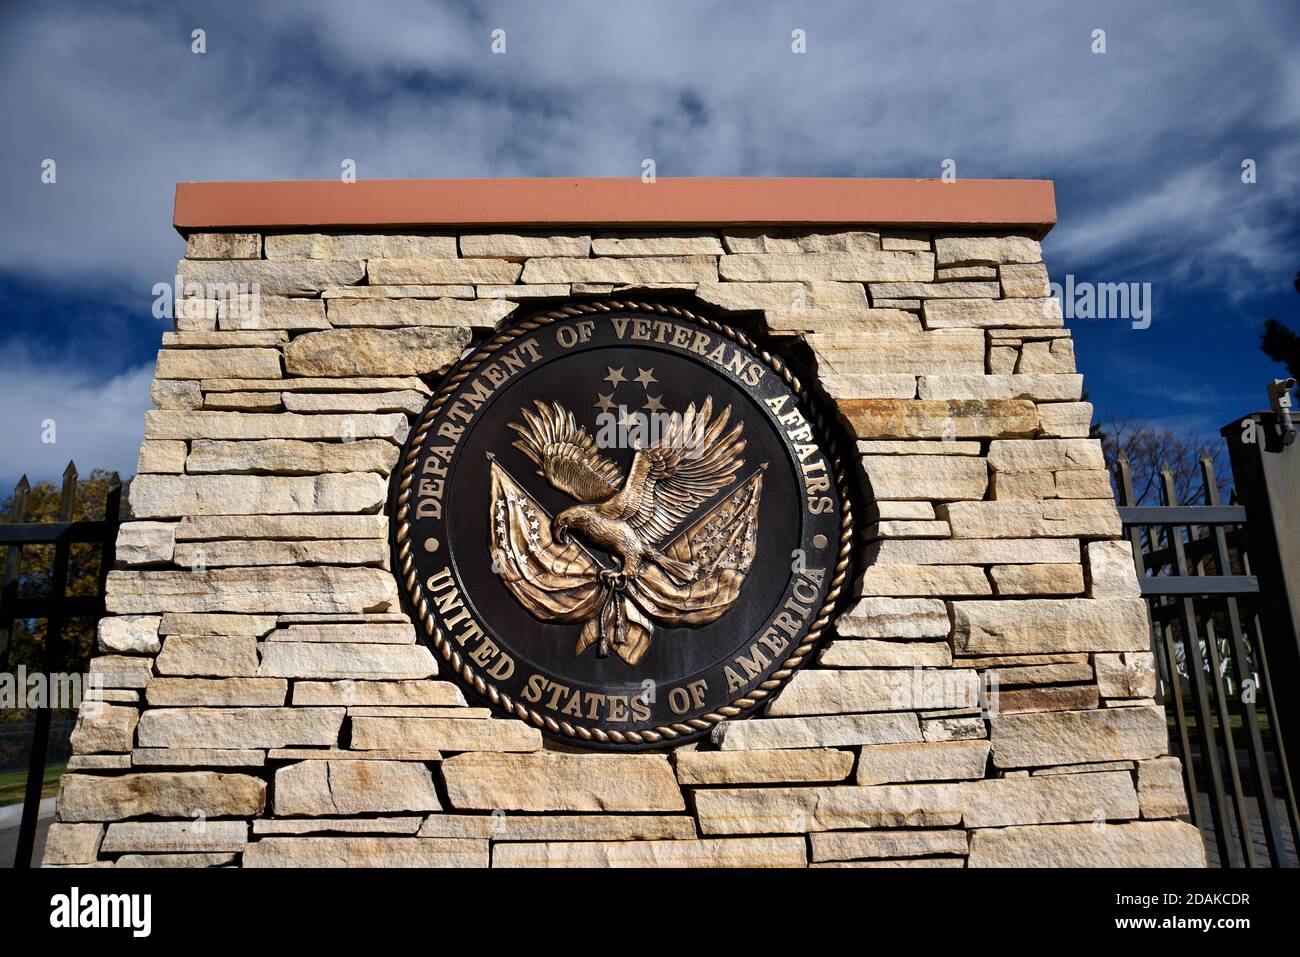 Un cartello metallico all'entrata del Cimitero Nazionale di Santa Fe in New Mexico amministrato dal Dipartimento degli Affari dei Veterani degli Stati Uniti. Foto Stock